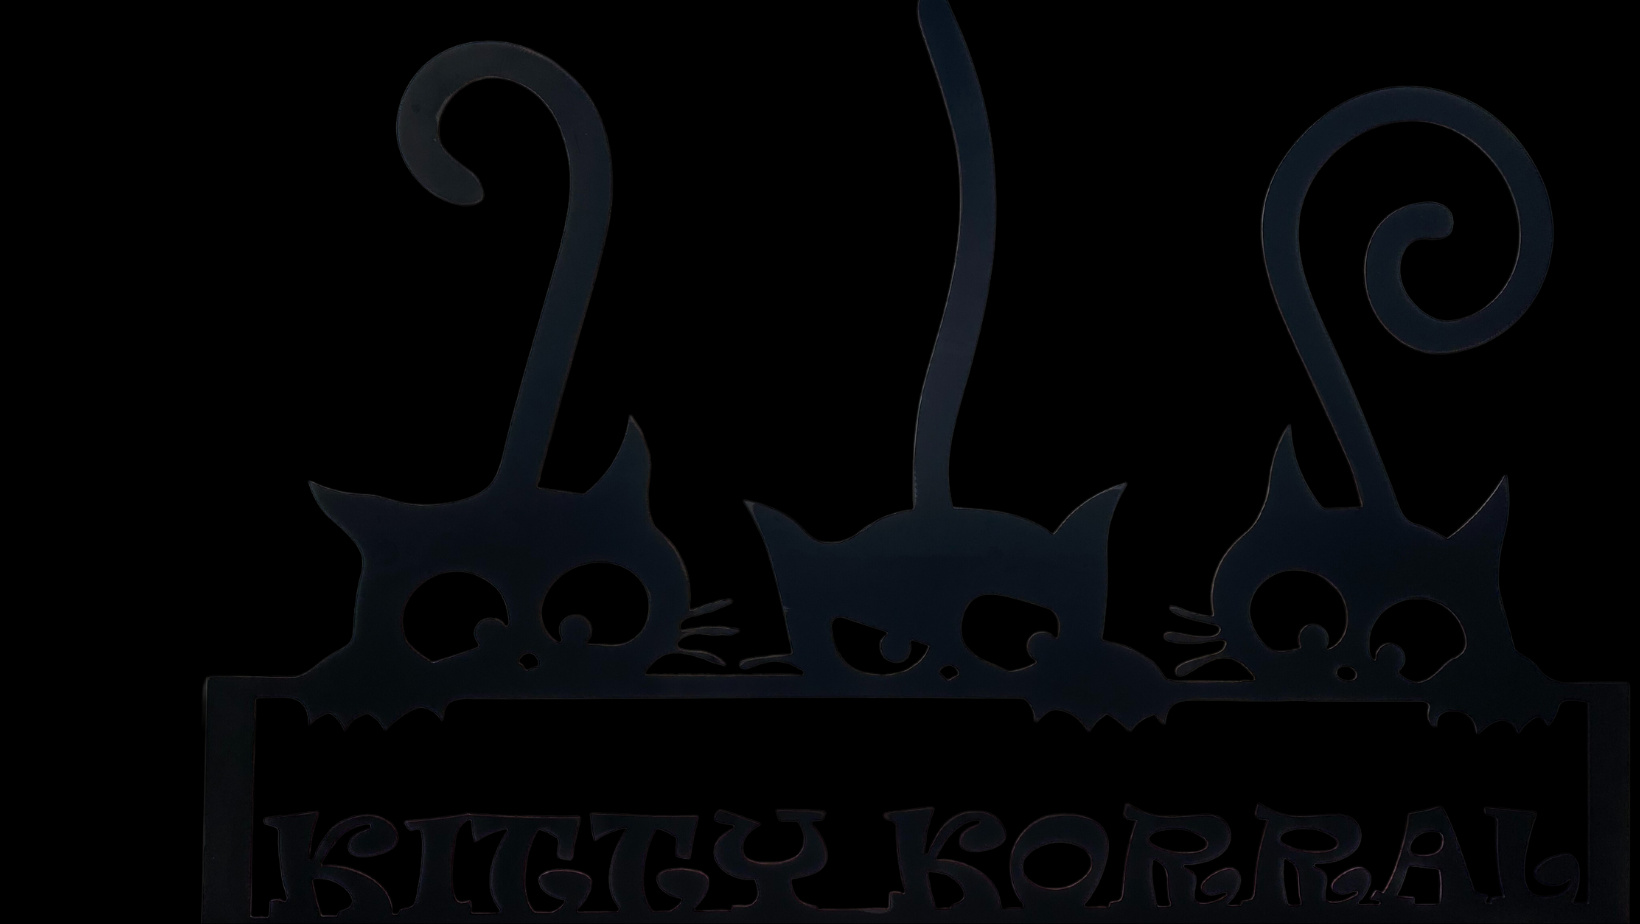 Kitty Korral Animal Rescue, Adoption & Sanctuary